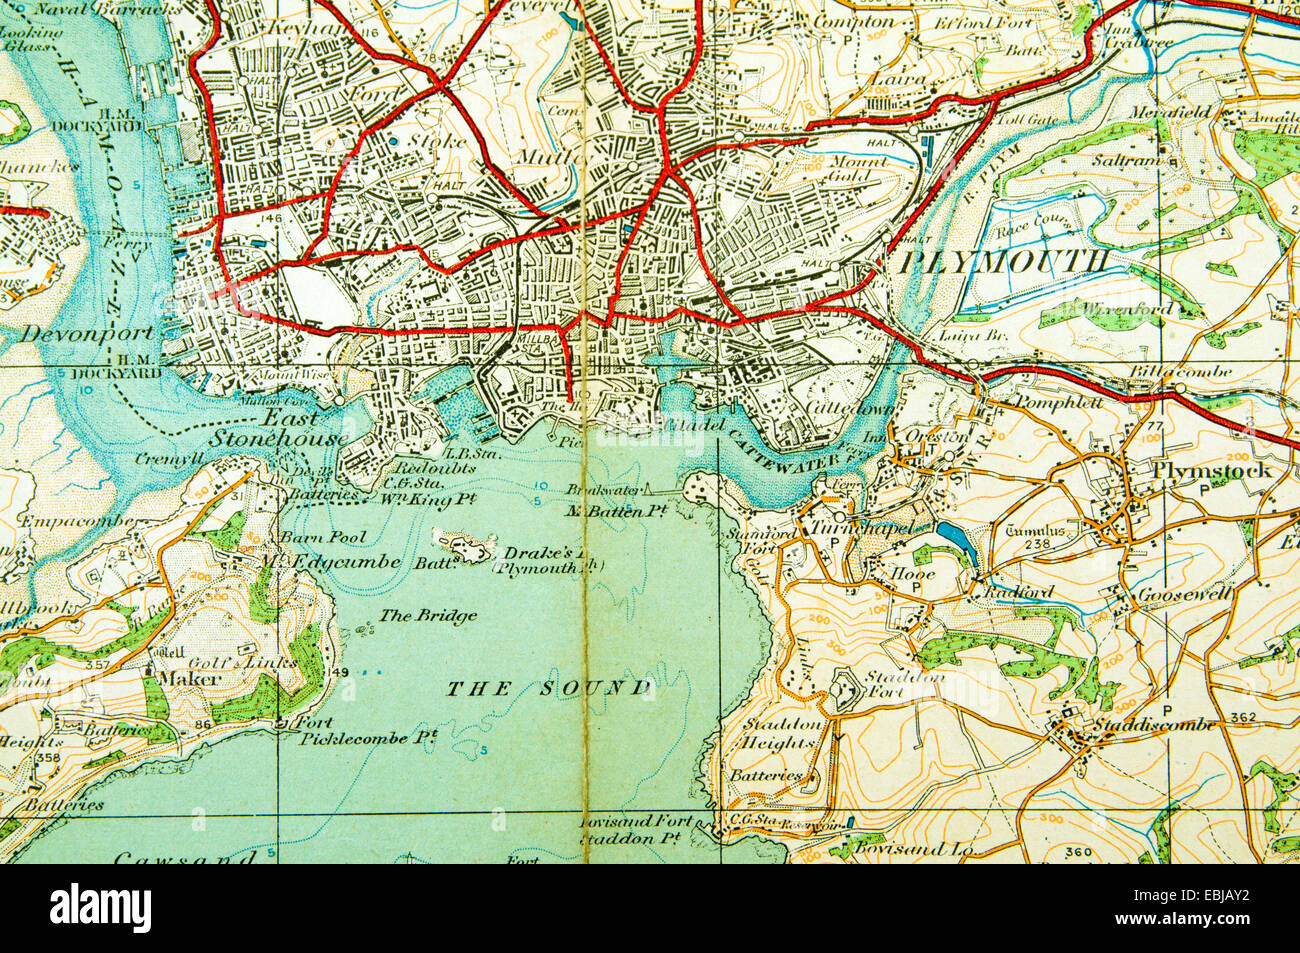 Historischen Ordnance Survey Karte von Plymouth, England. Stockfoto